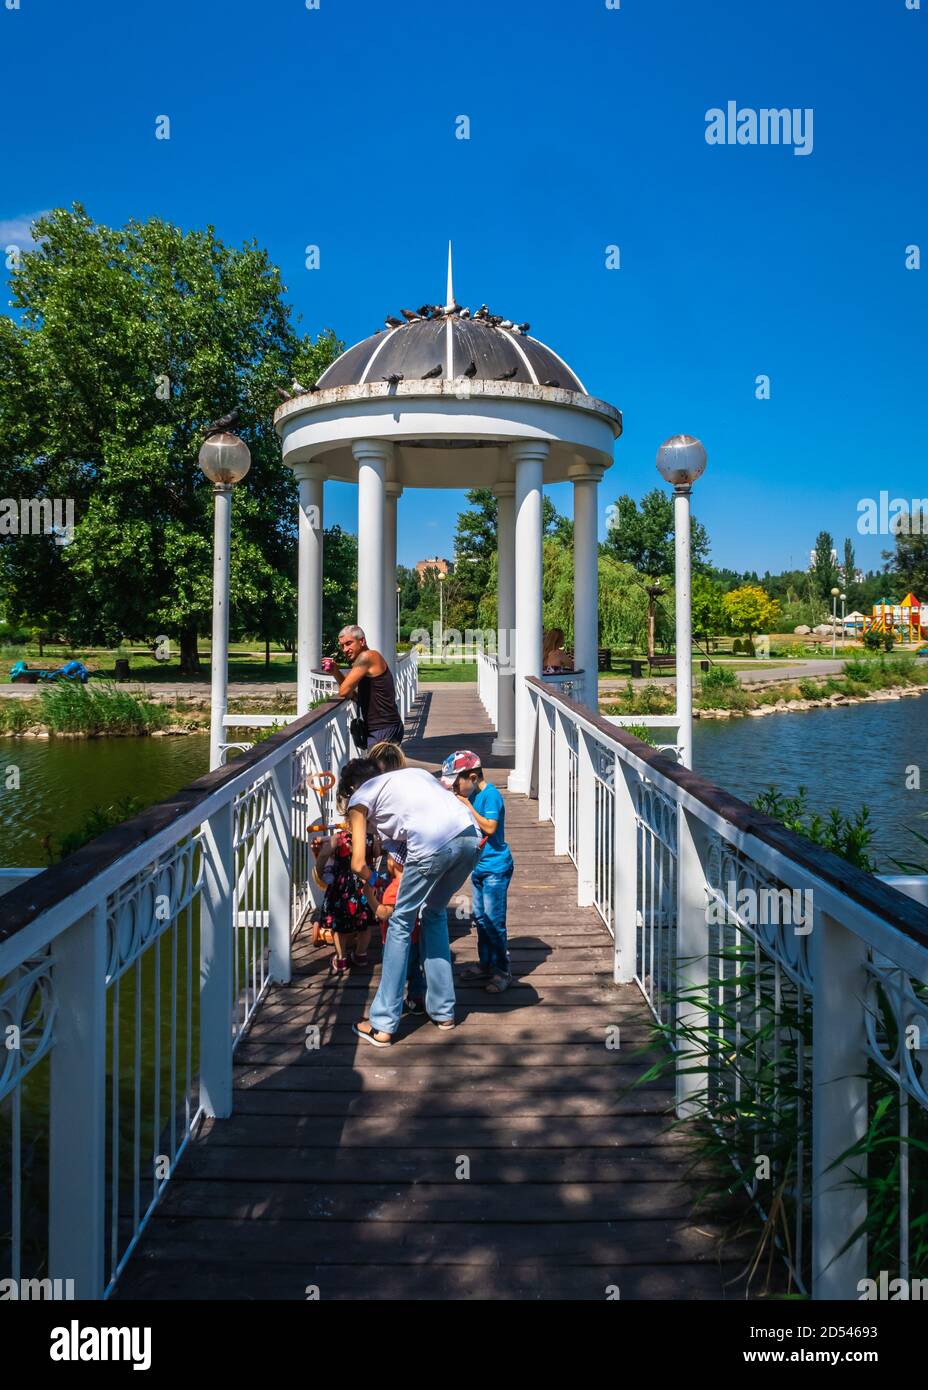 Zaporozhye, Ukraine 07.21.2020. Bridge over the pond and gazebo in Voznesenovsky park in Zaporozhye, Ukraine, on a sunny summer morning Stock Photo